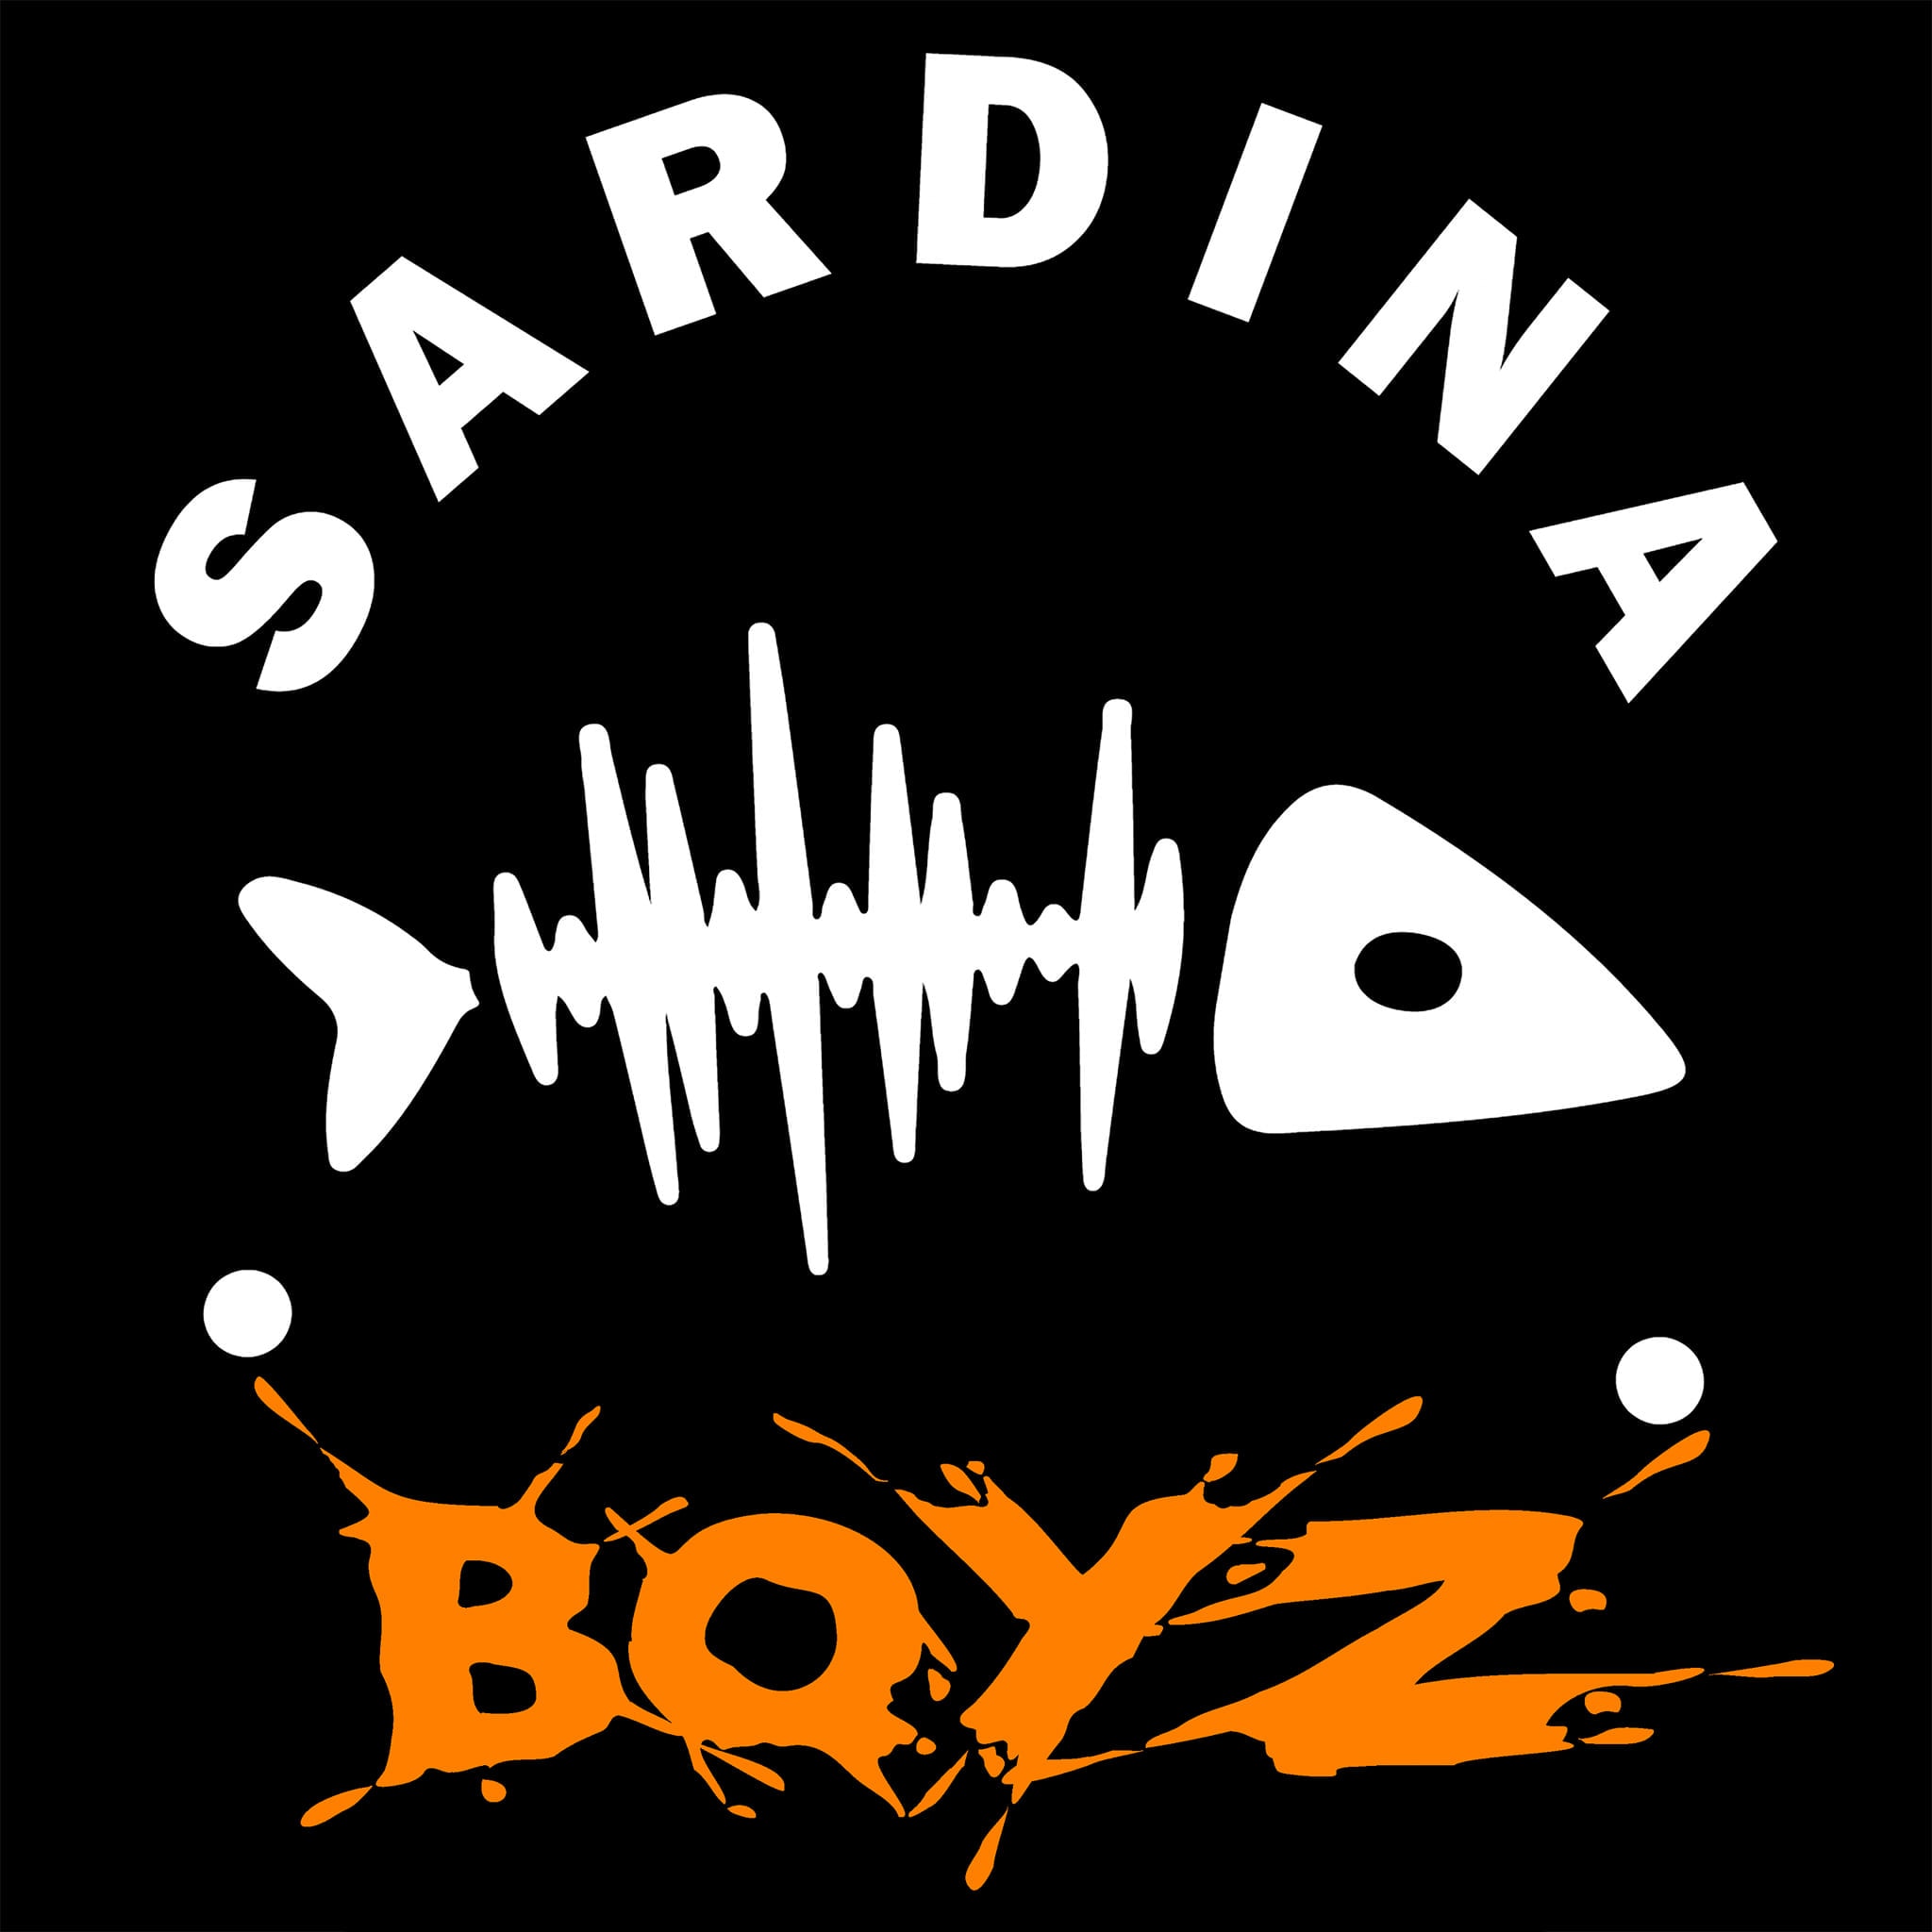 Sardina Boyz – 4pro feat. Cab og Pede B